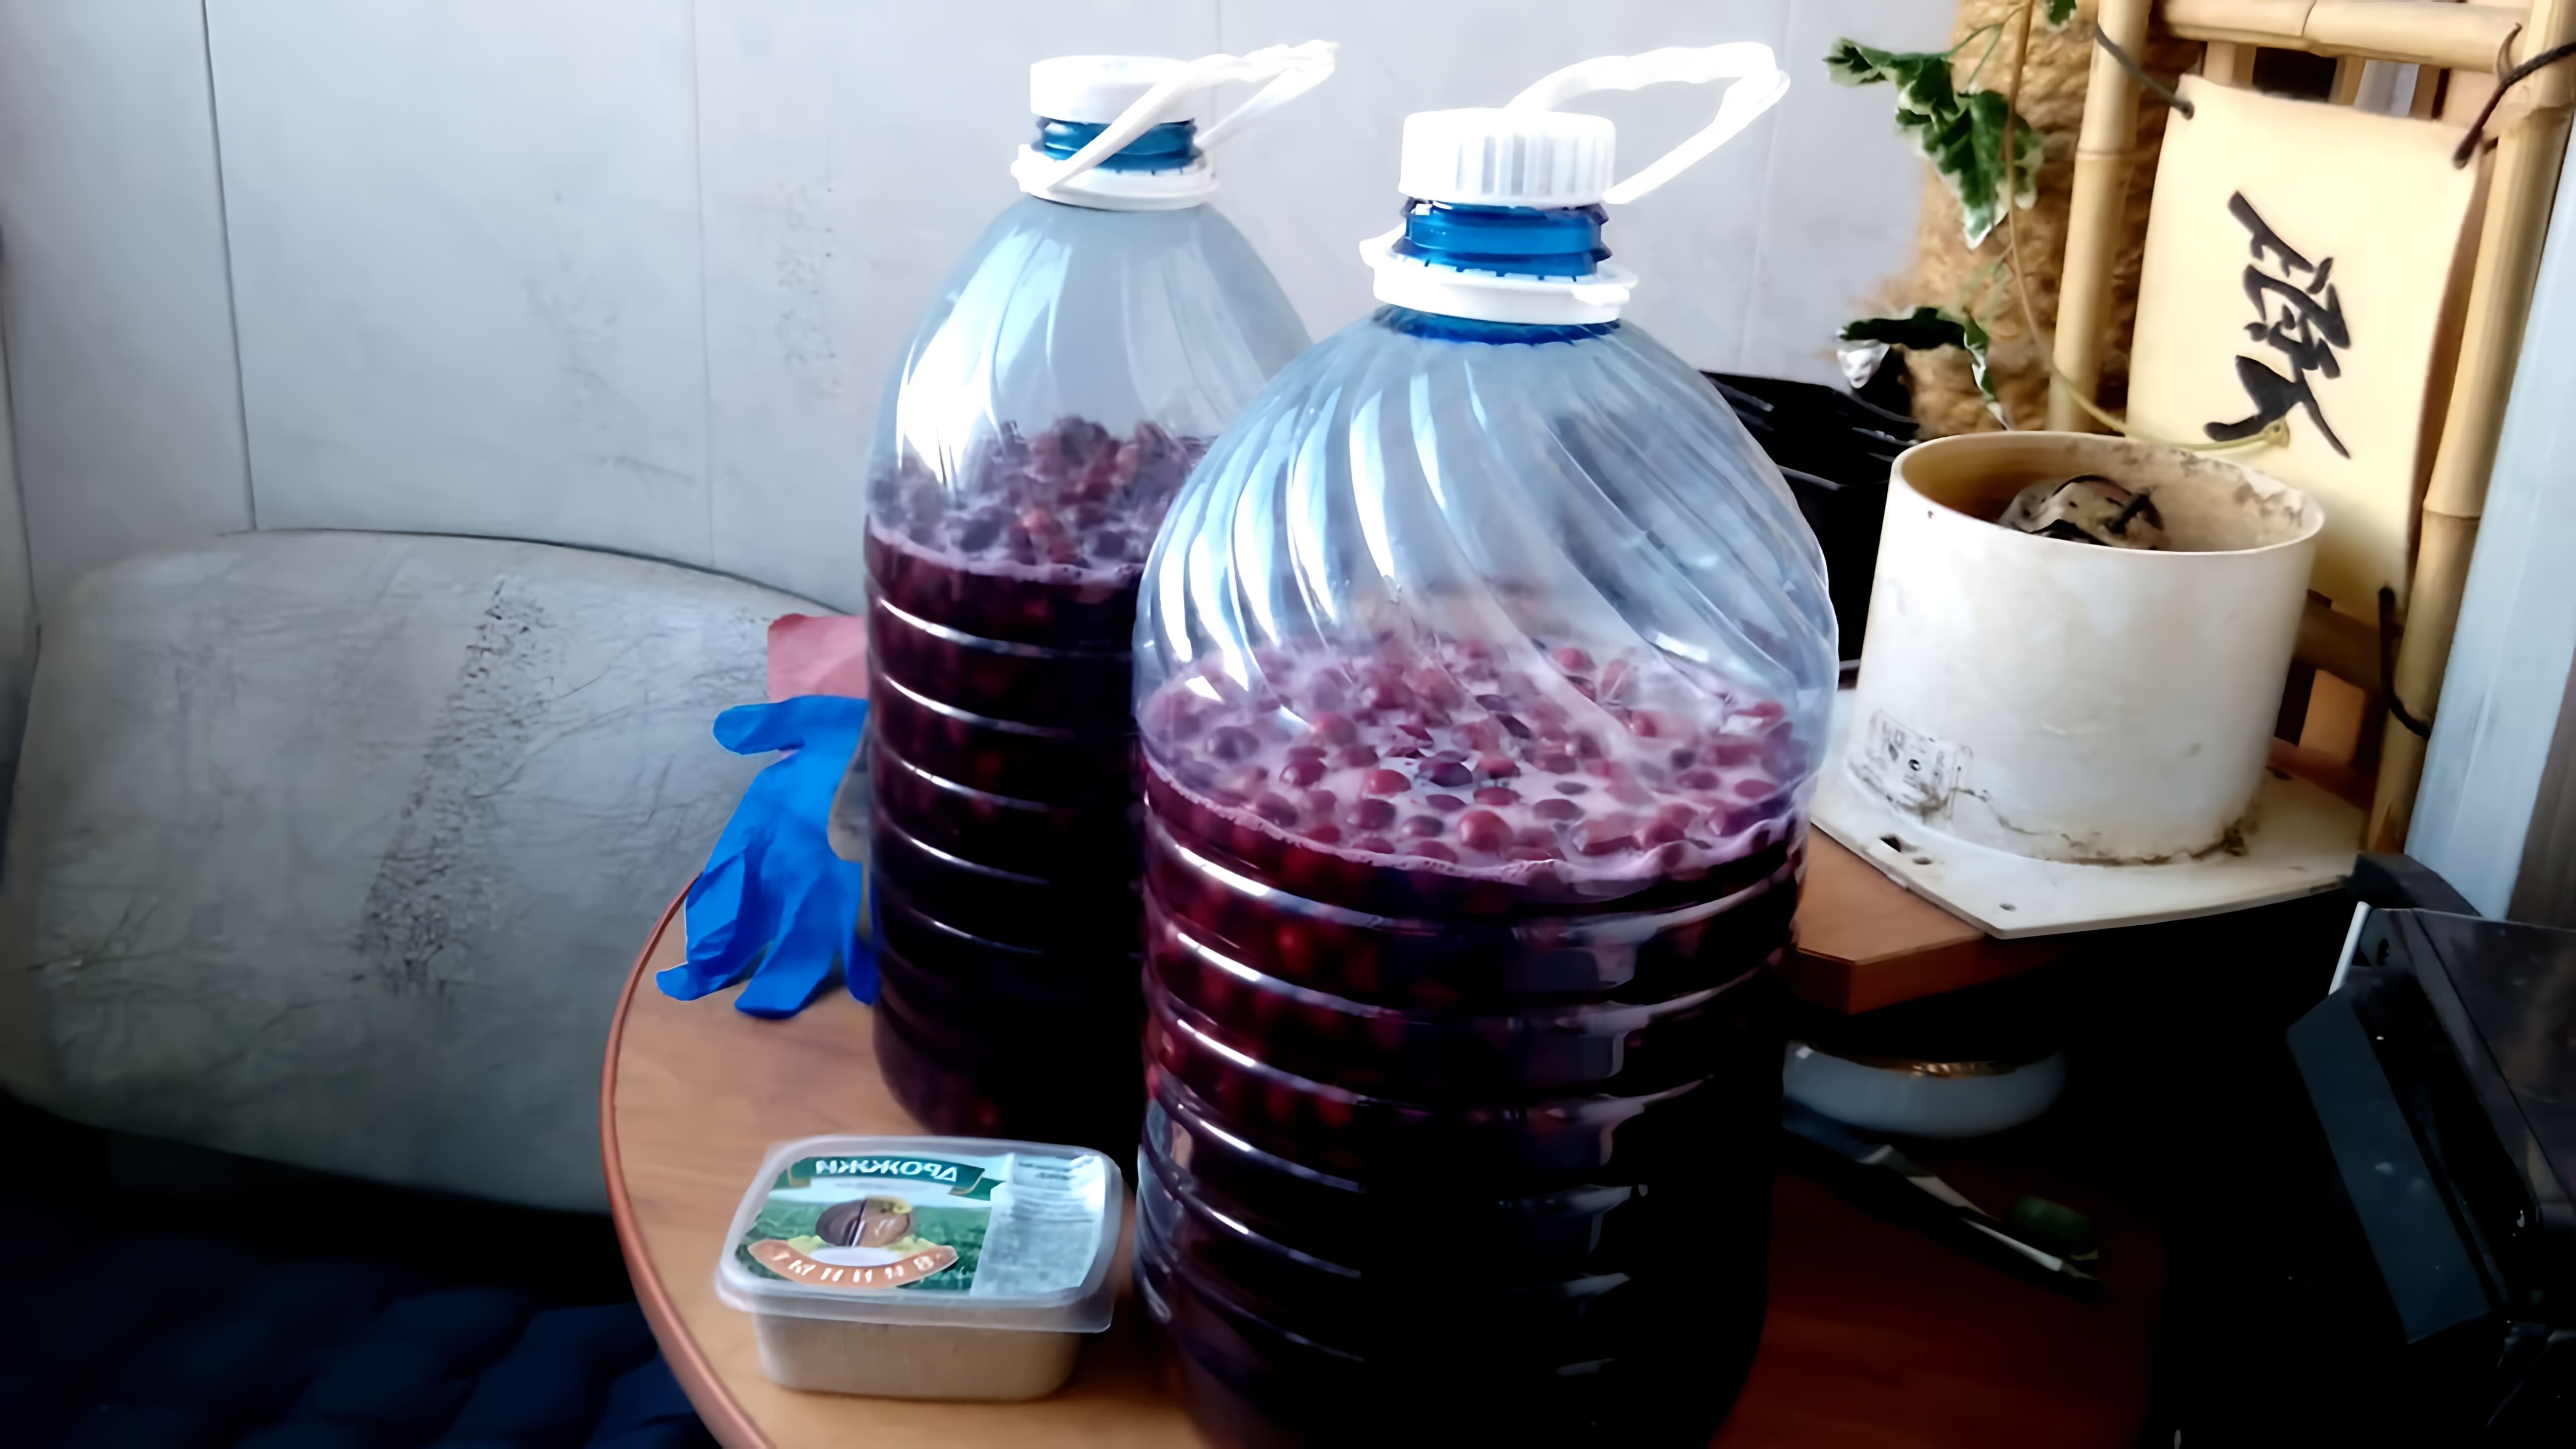 В этом видео рассказывается о процессе приготовления вишневого вина в домашних условиях